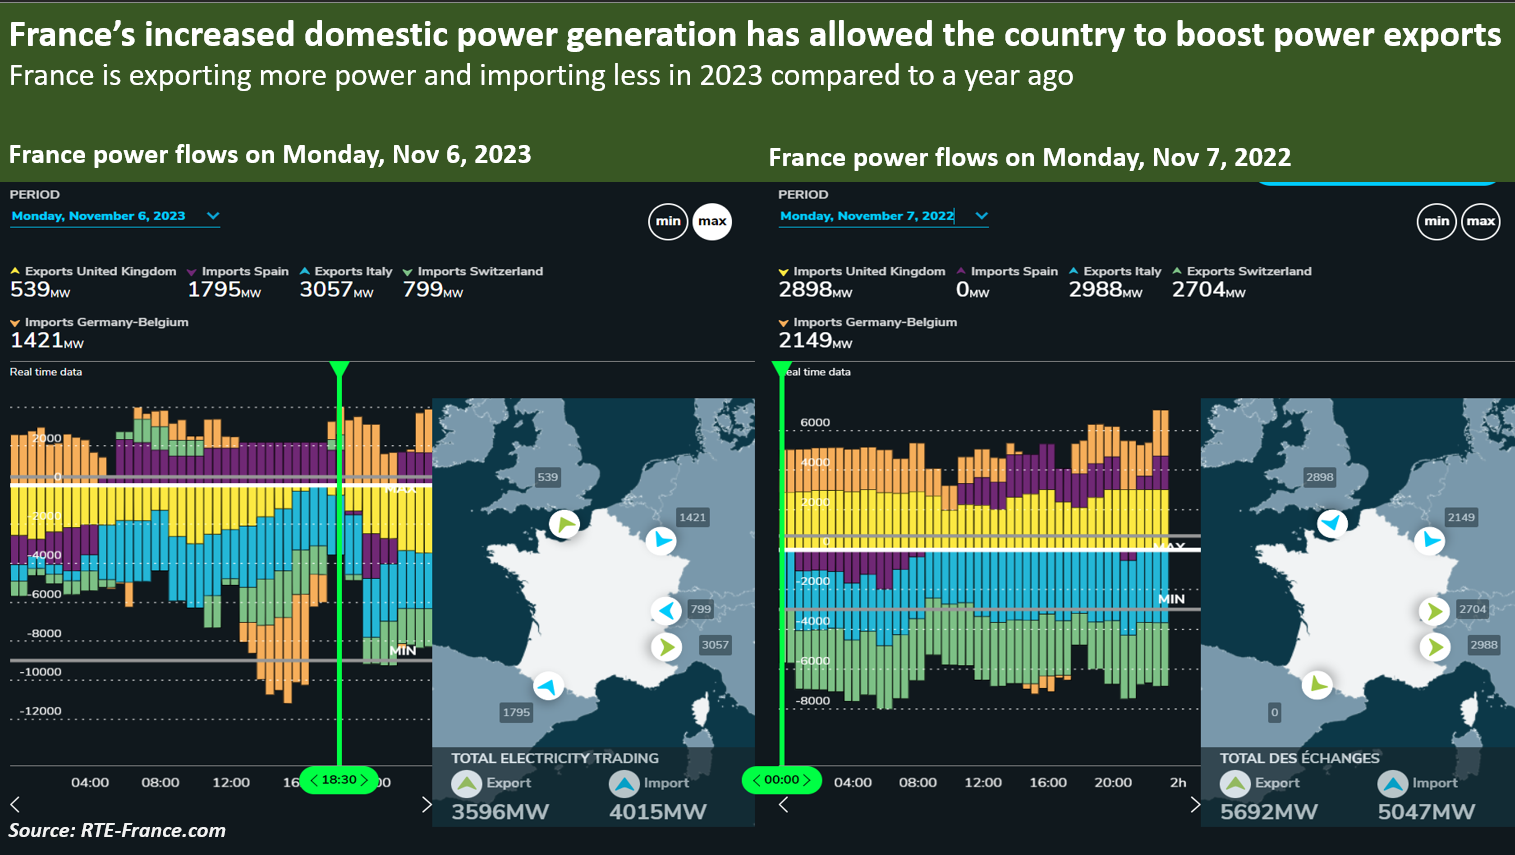 L’augmentation de la production nationale d’électricité en France a permis au pays de stimuler ses exportations d’électricité